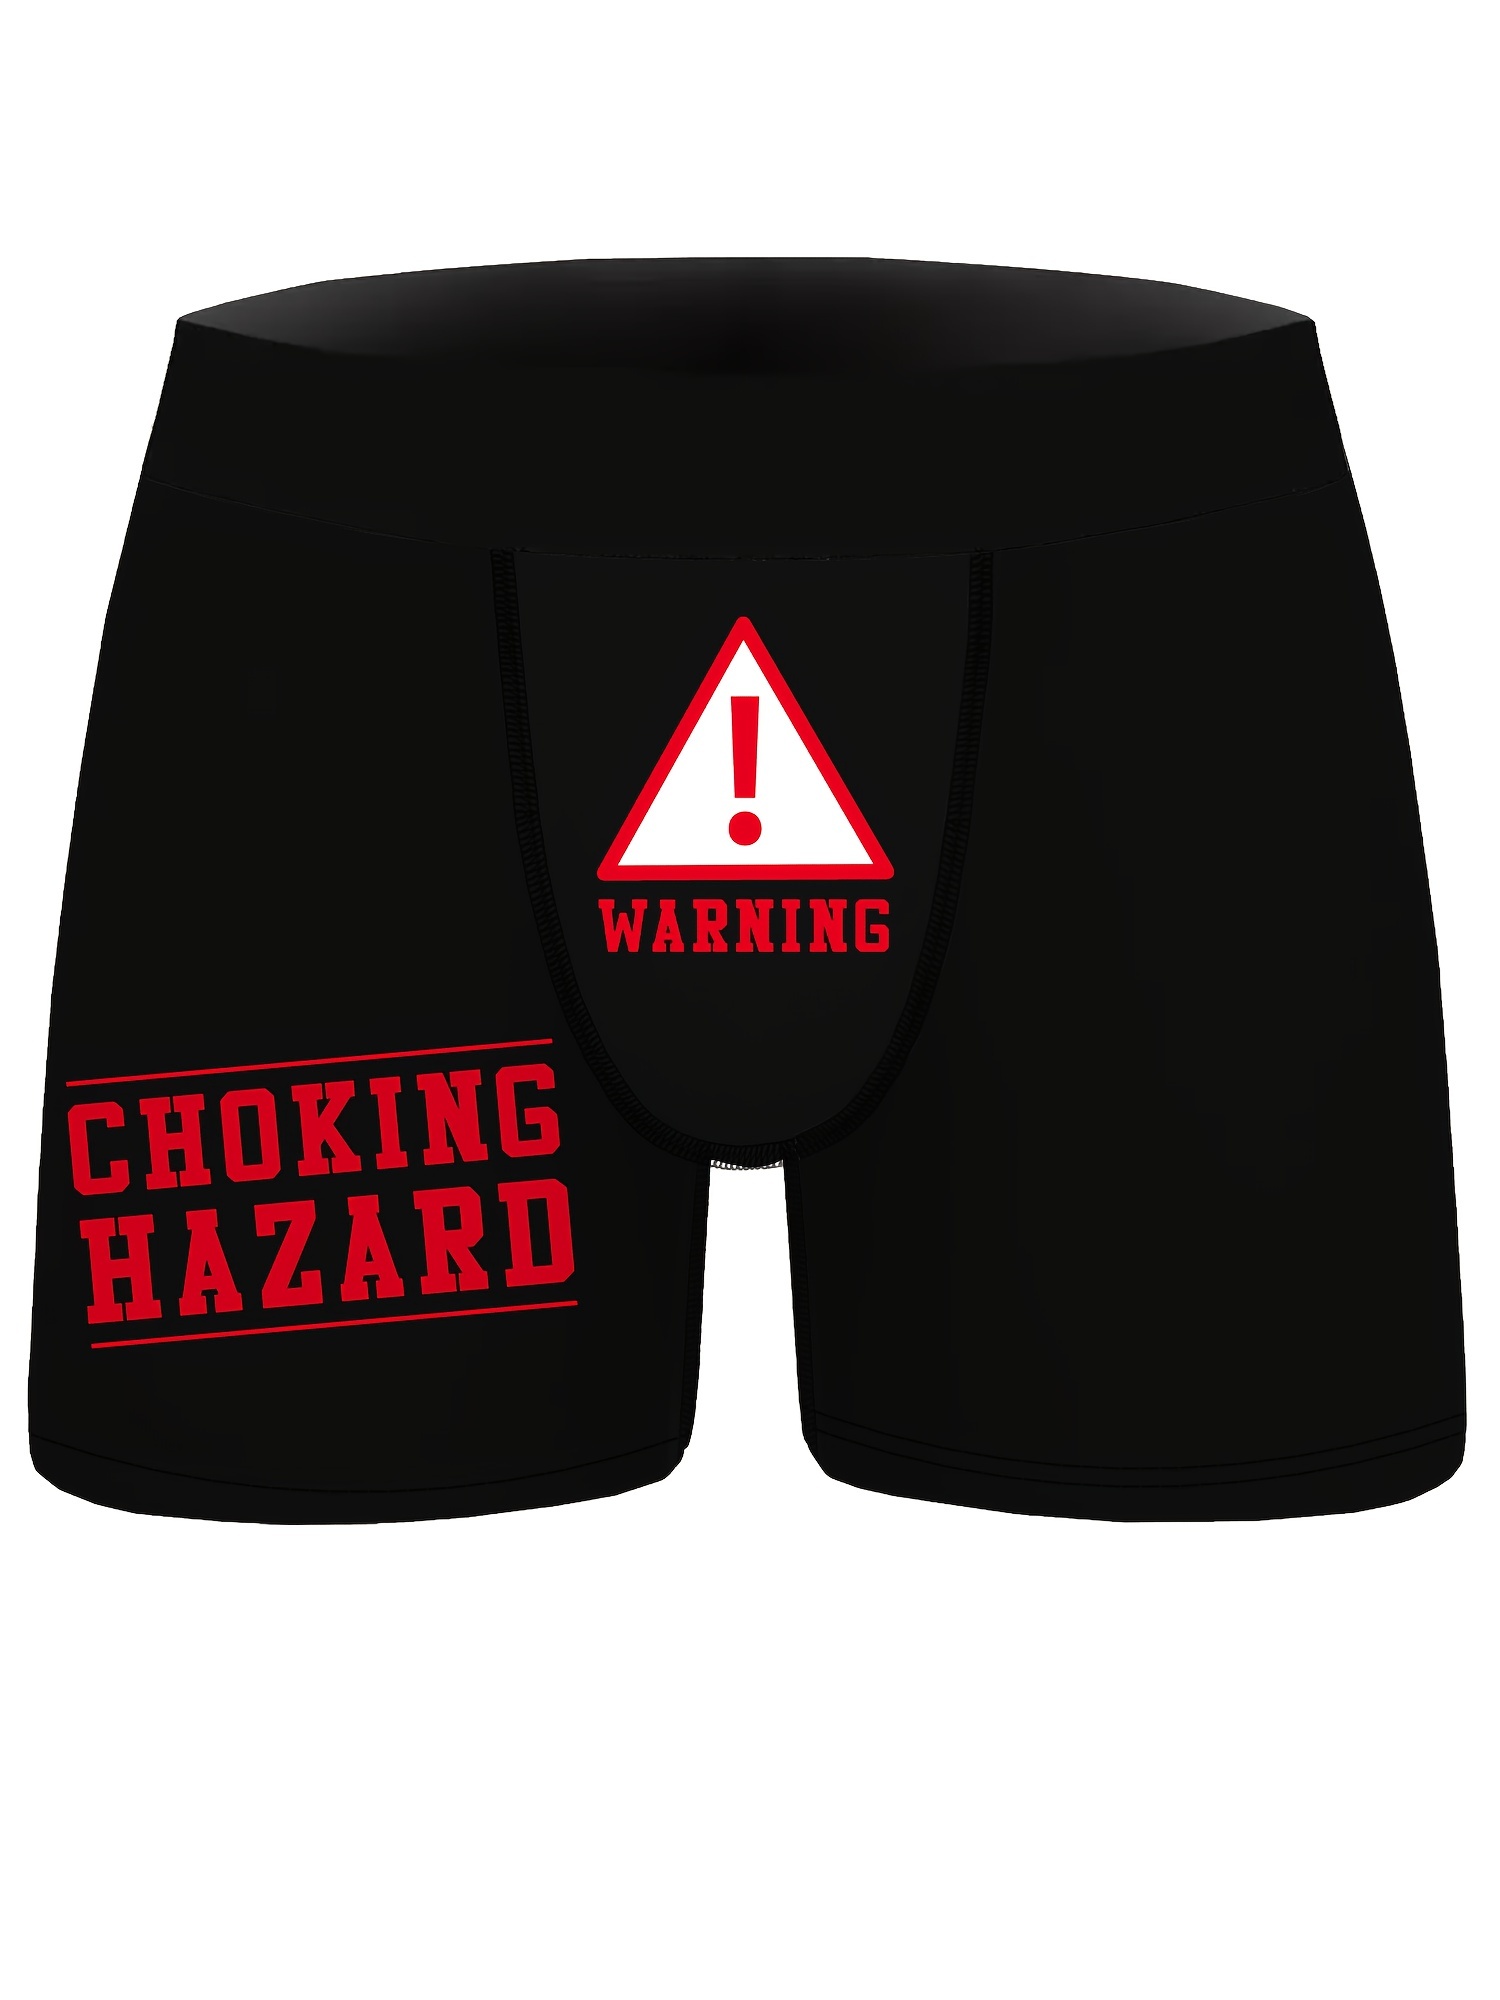 Caution Choking Hazard Boxer Briefs - Heather Grey Boxer Brief Underwear